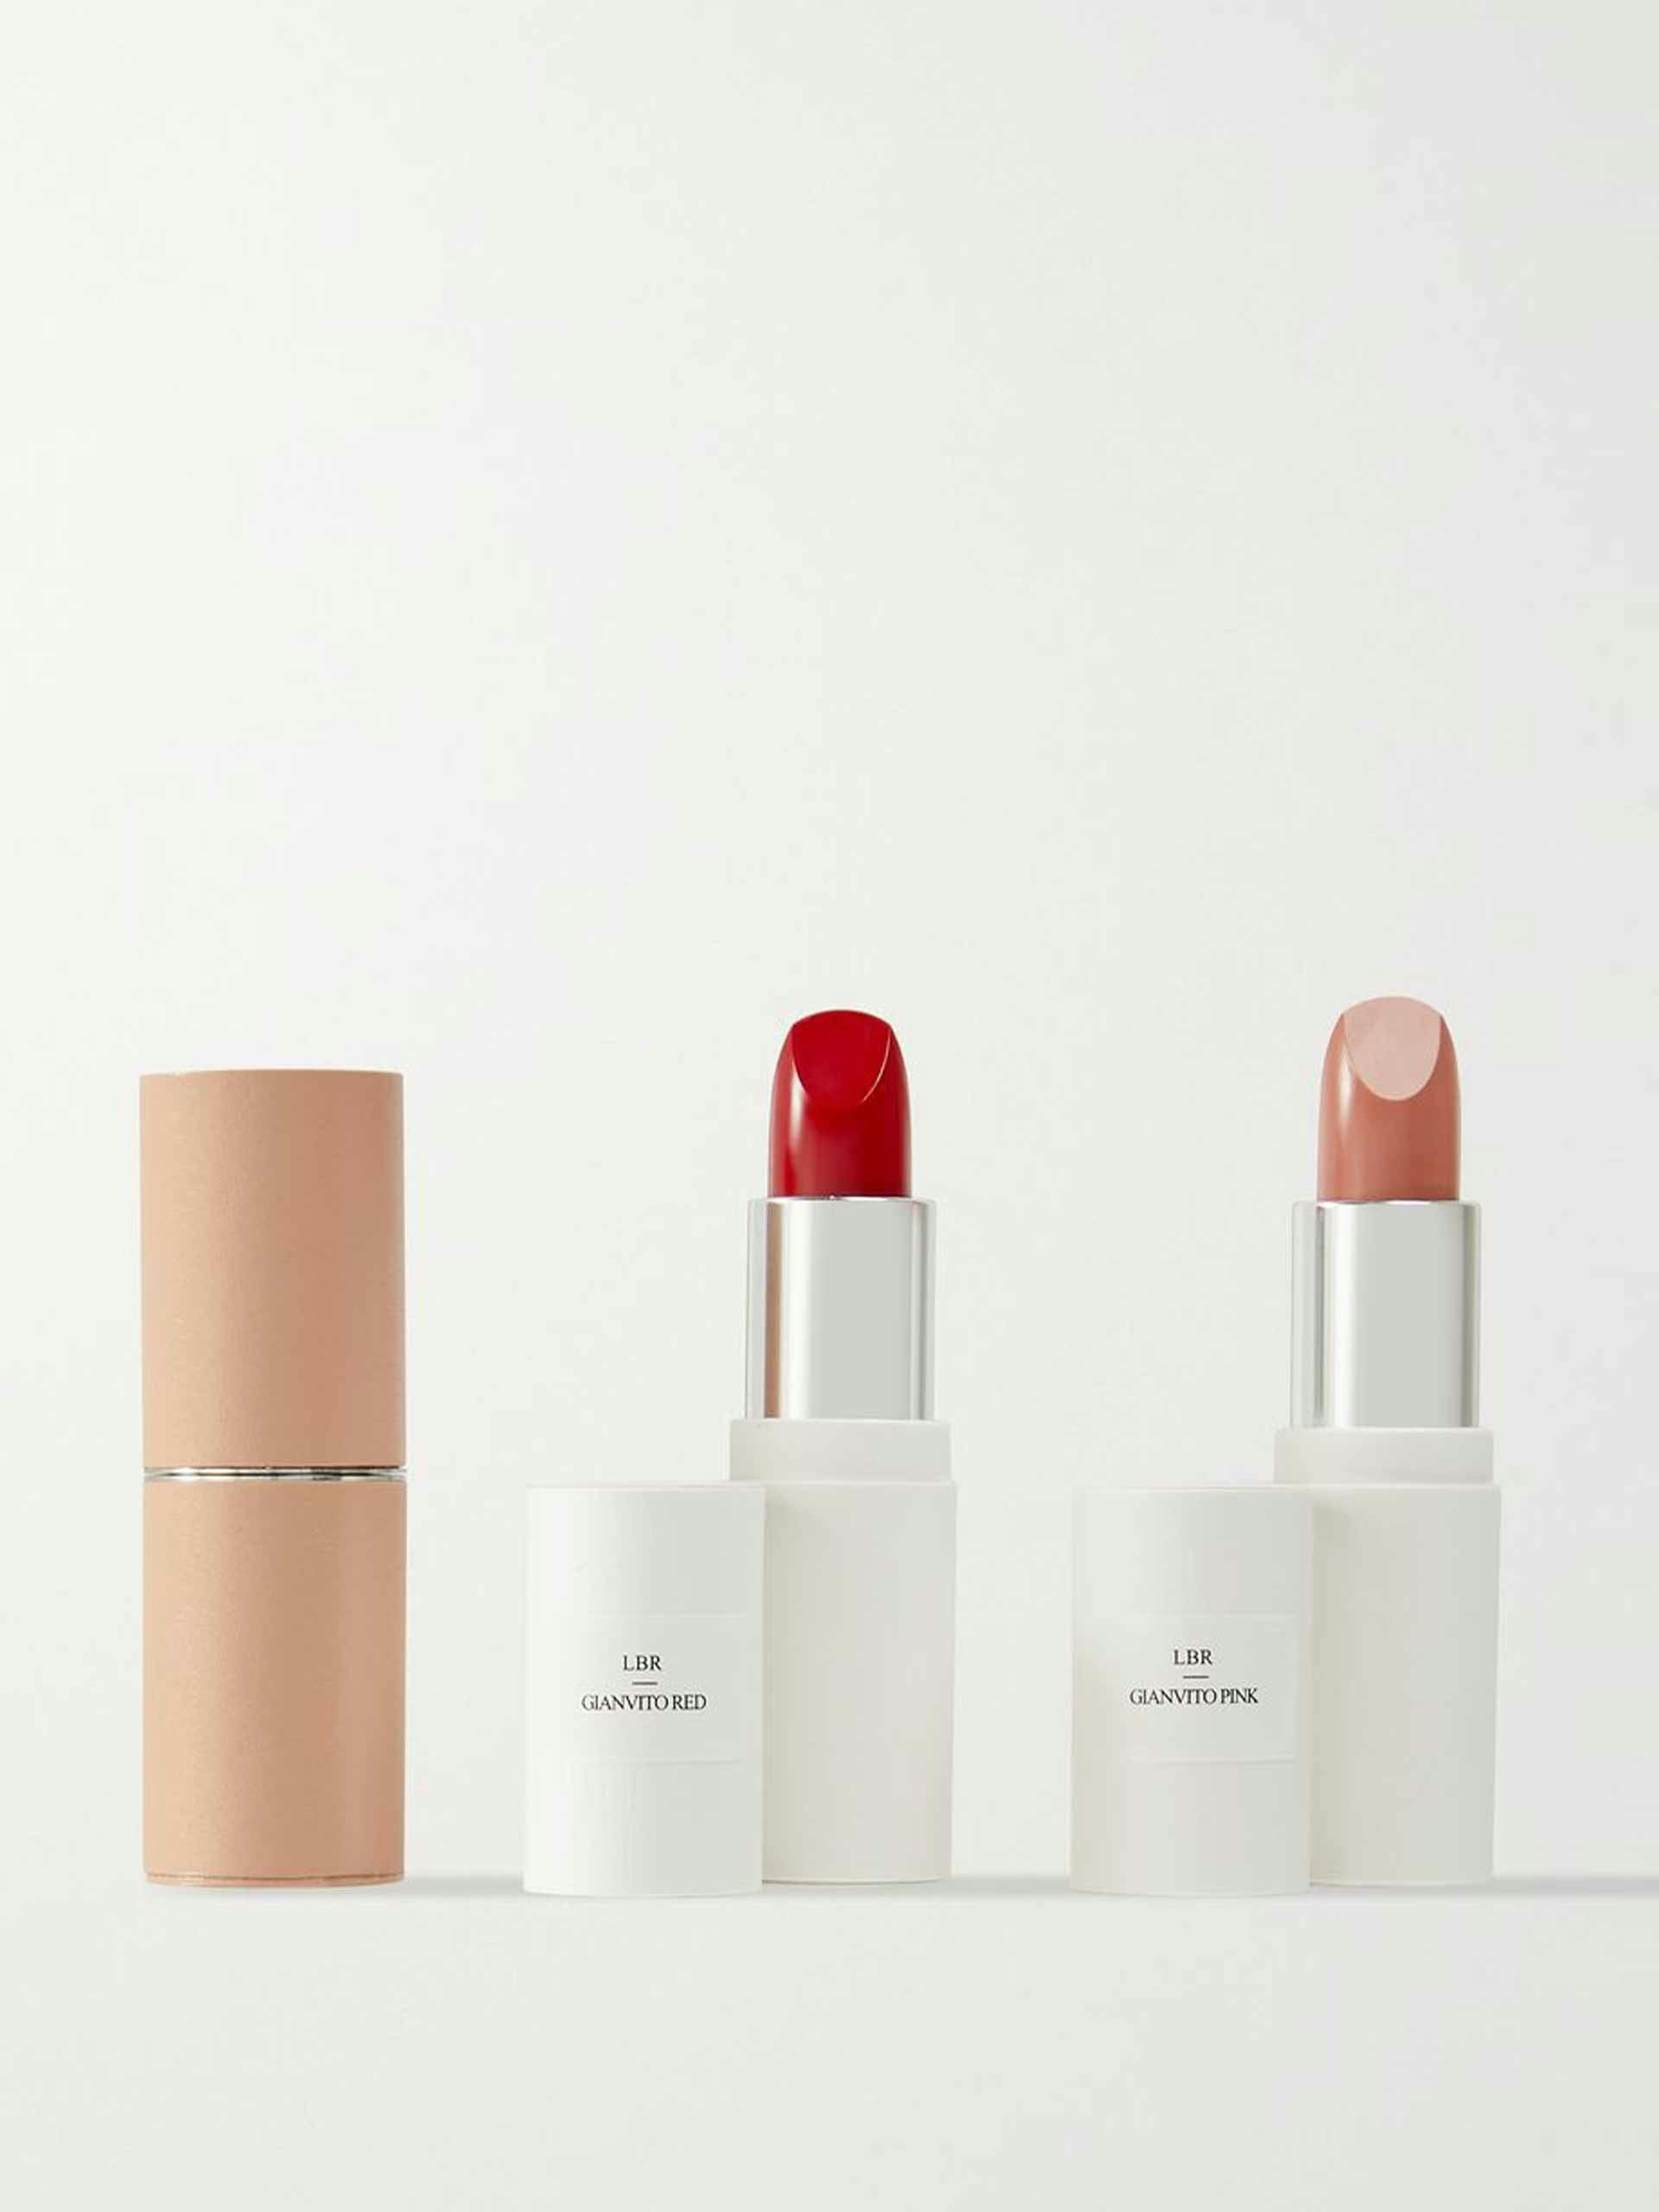 The Gianvito Rossi lipstick set